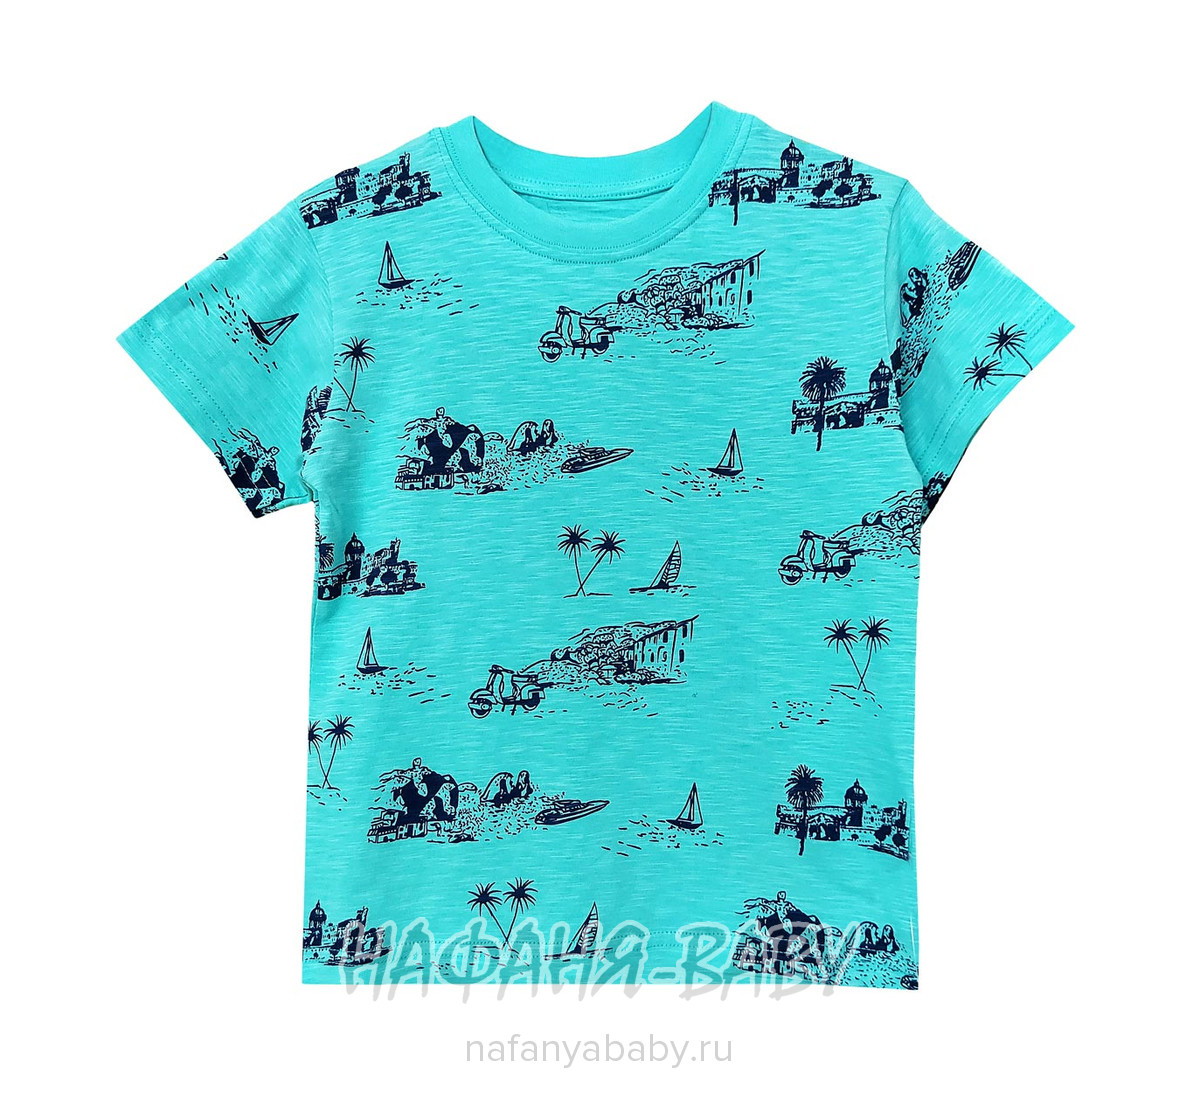 Детская футболка UNRULY арт: 3298, 5-9 лет, 1-4 года, цвет бирюзовый, оптом Турция